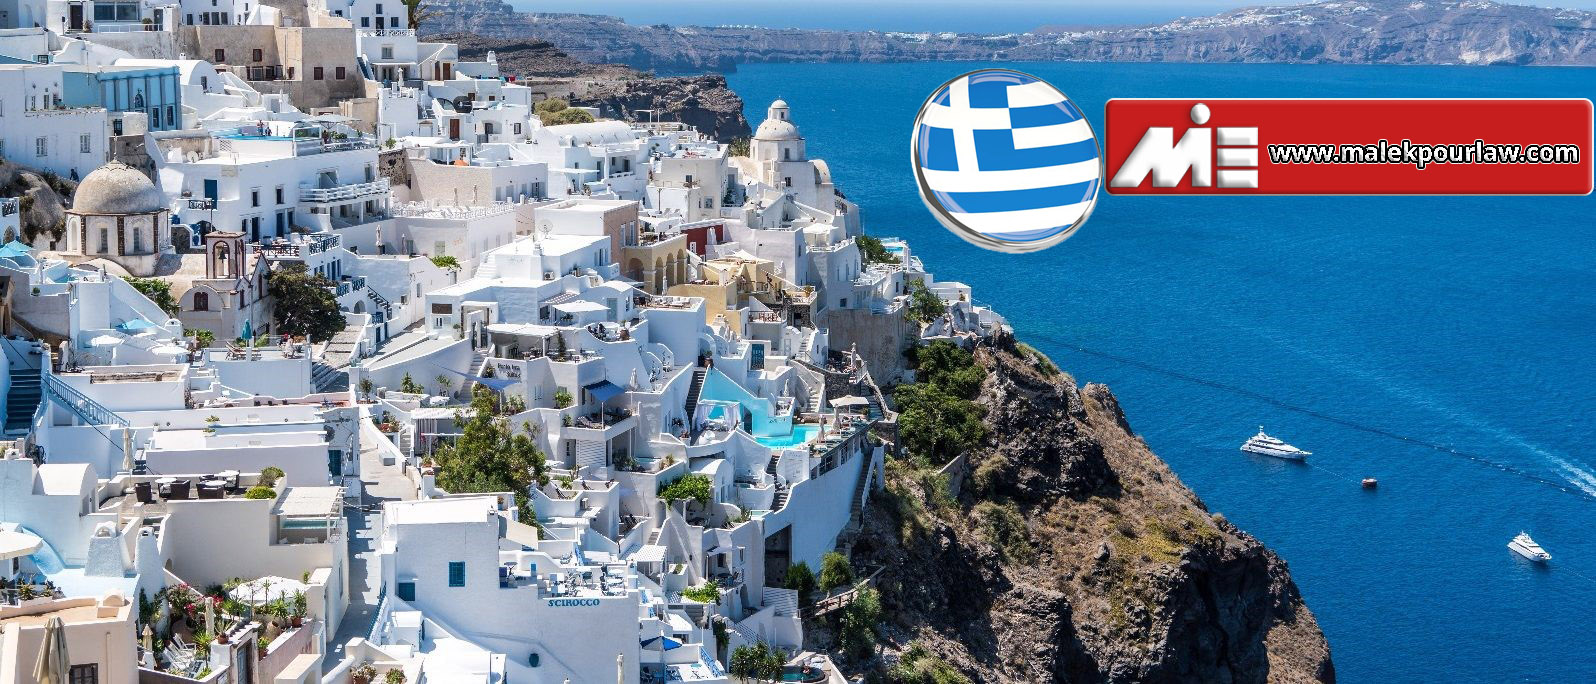 جاذبه های گردشگری یونان - سفر به یونان - مهاجرت به یونان - سرمایه گذاری در یونان - اقامت یونان از طریق تمکن مالی - خرید ملک در یونان